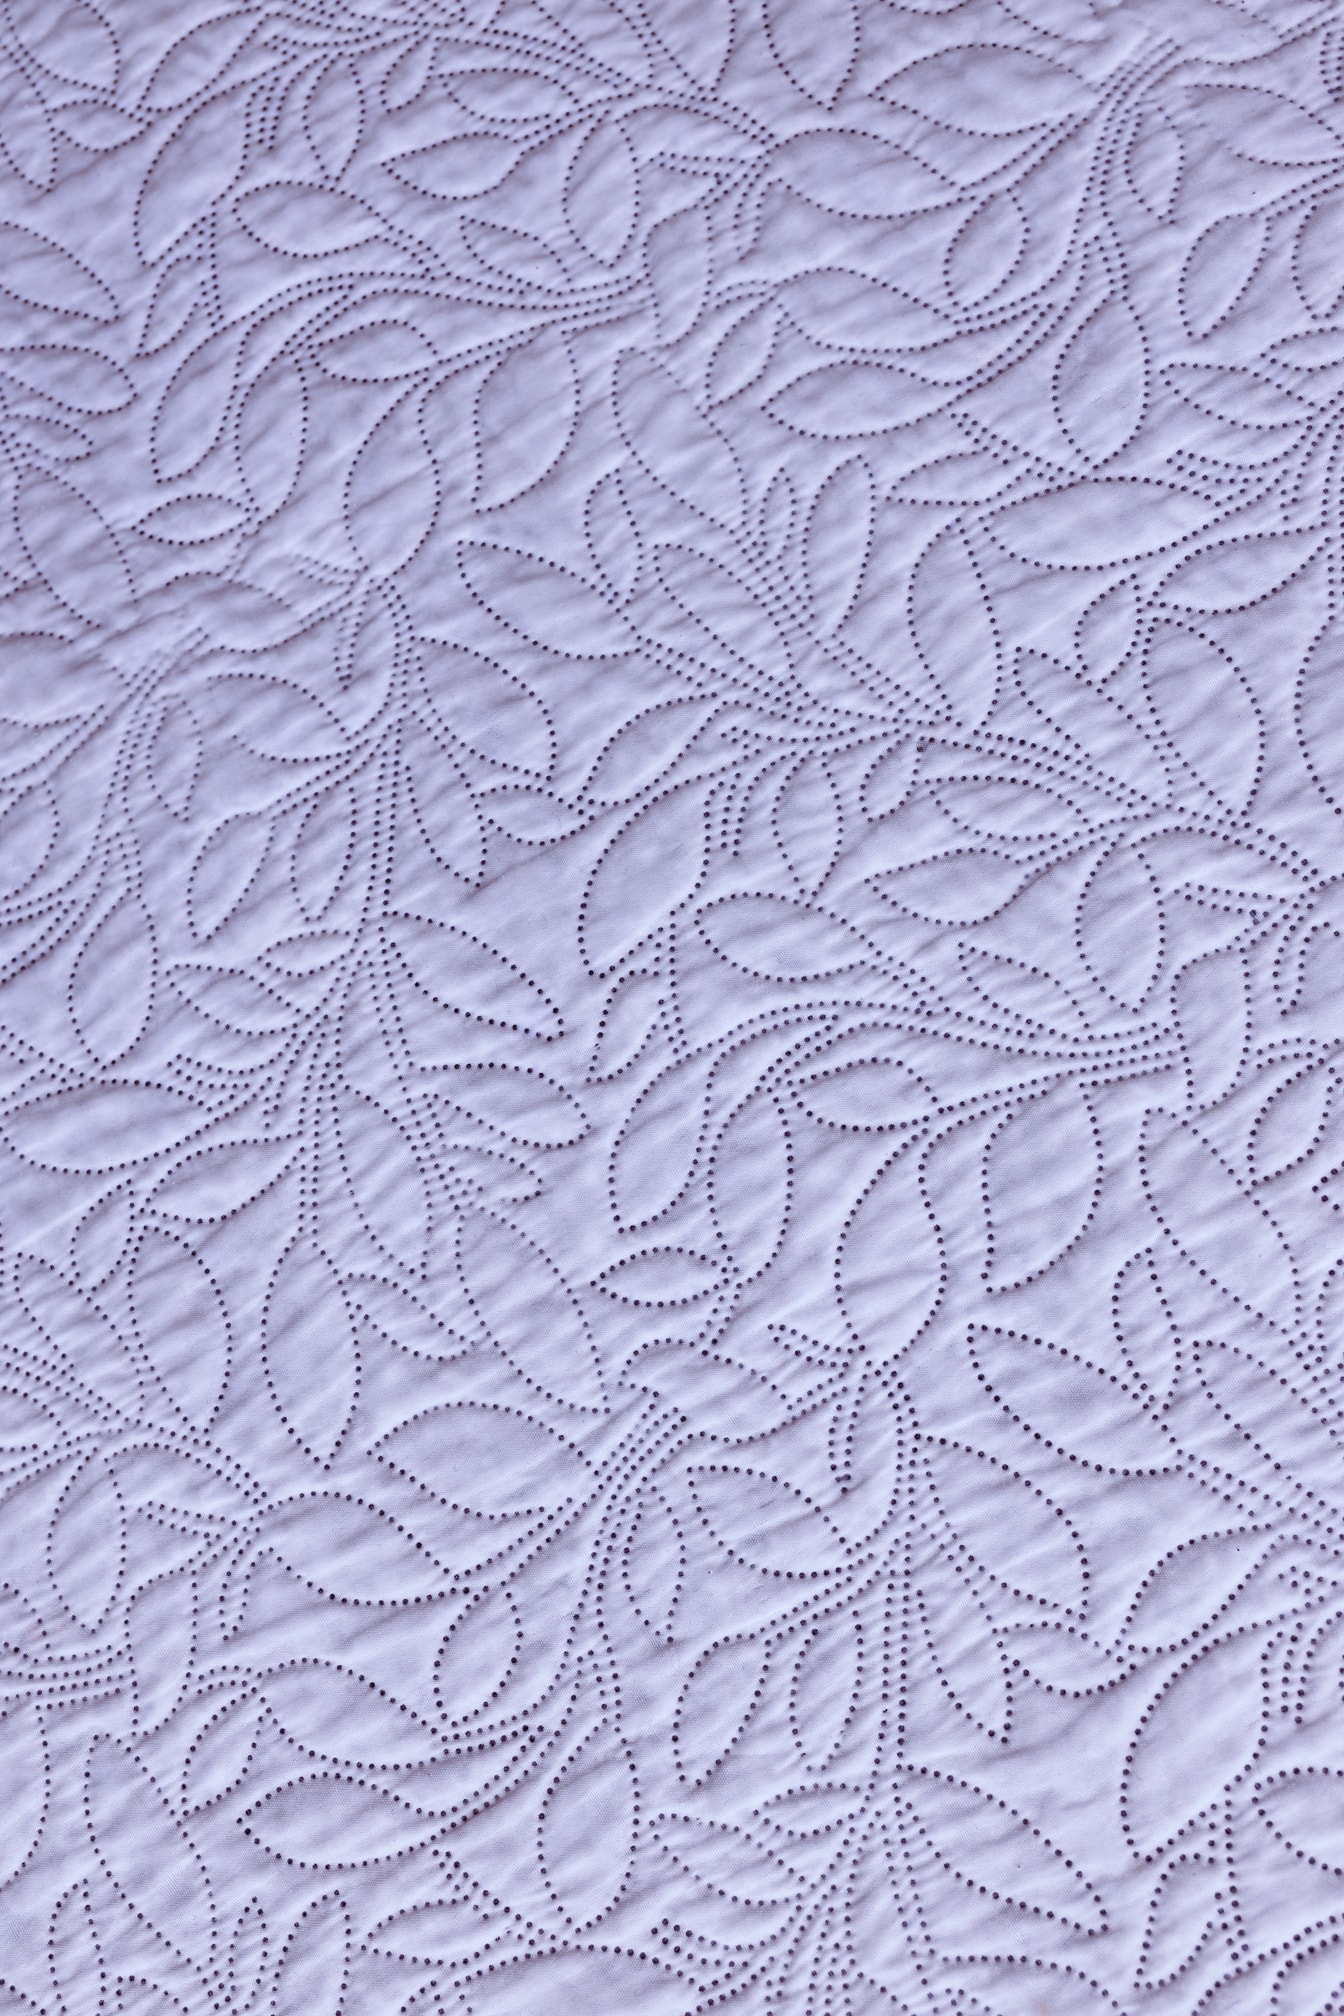 Tekstil damask katun putih dengan hiasan jahit hias